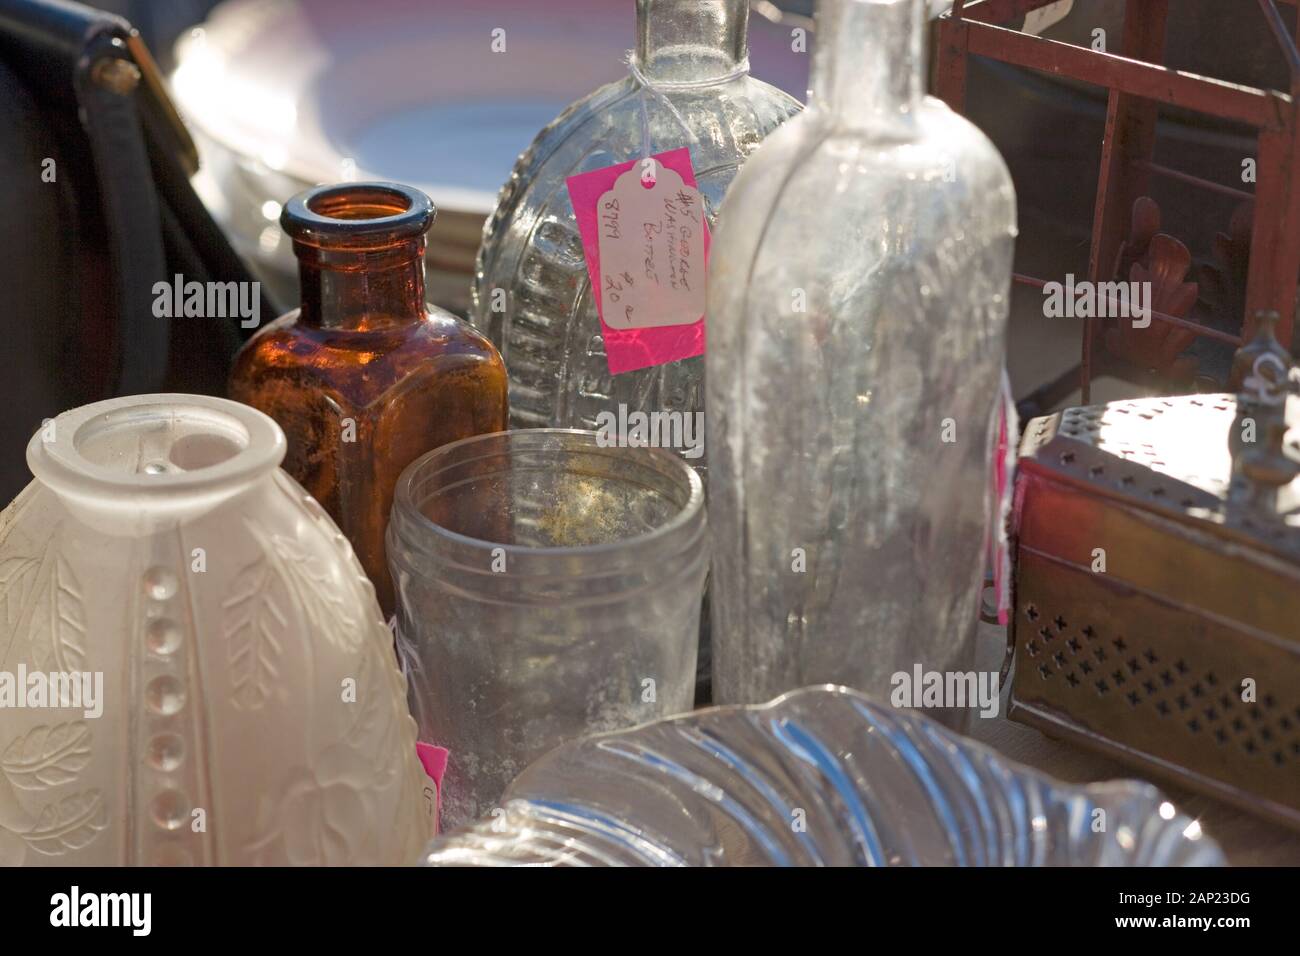 La vie encore de variété de percevoir les bouteilles et contenants de verre antique à vendre à un marché aux puces local Banque D'Images